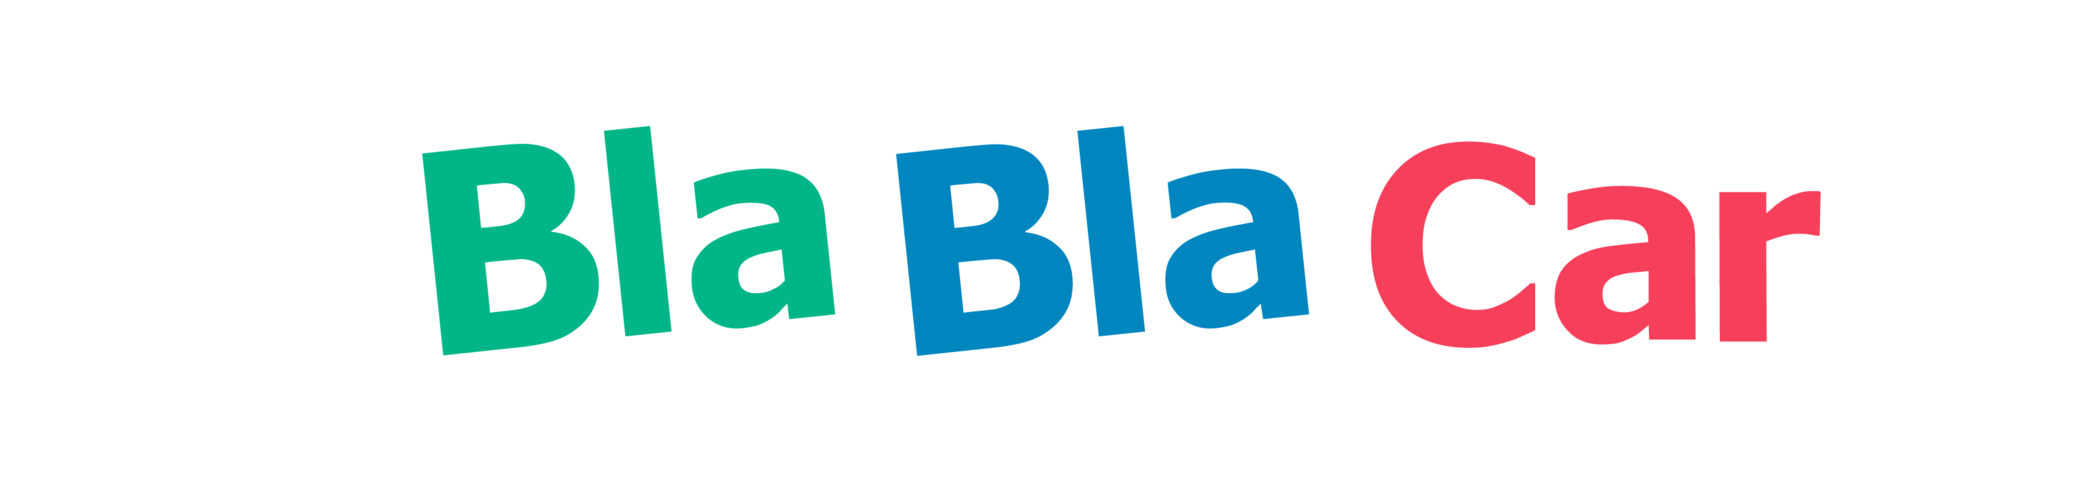 BlaBlaCar_logo_left_holder_RGB_2100x491_300_RGB